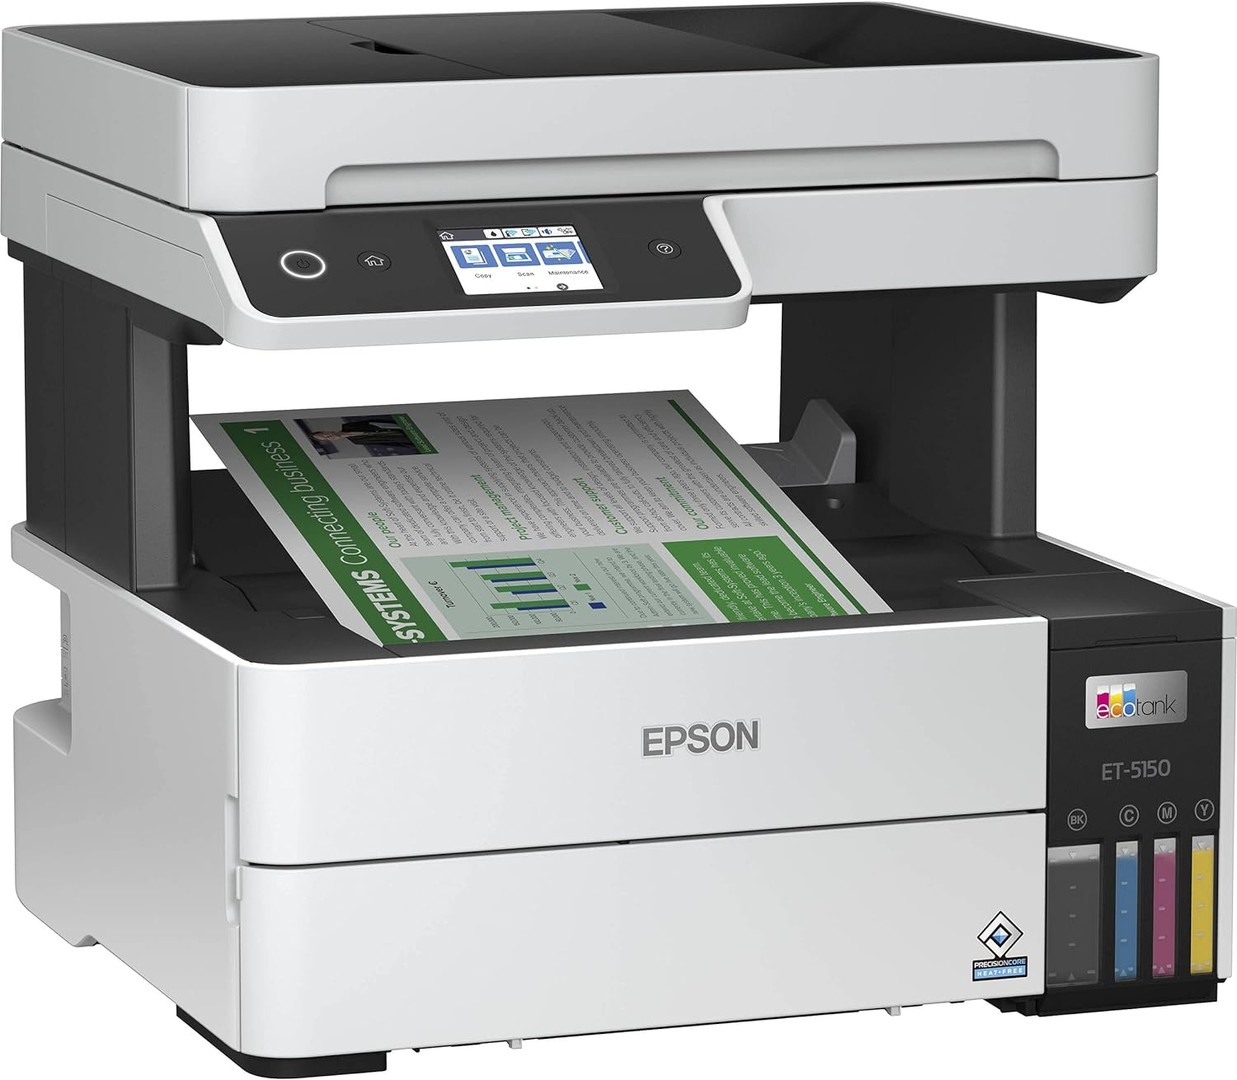 impresoras y scanners - Impresora Epson EcoTank Pro ET-5150  inalámbrica a color Multifunción Supertank 1